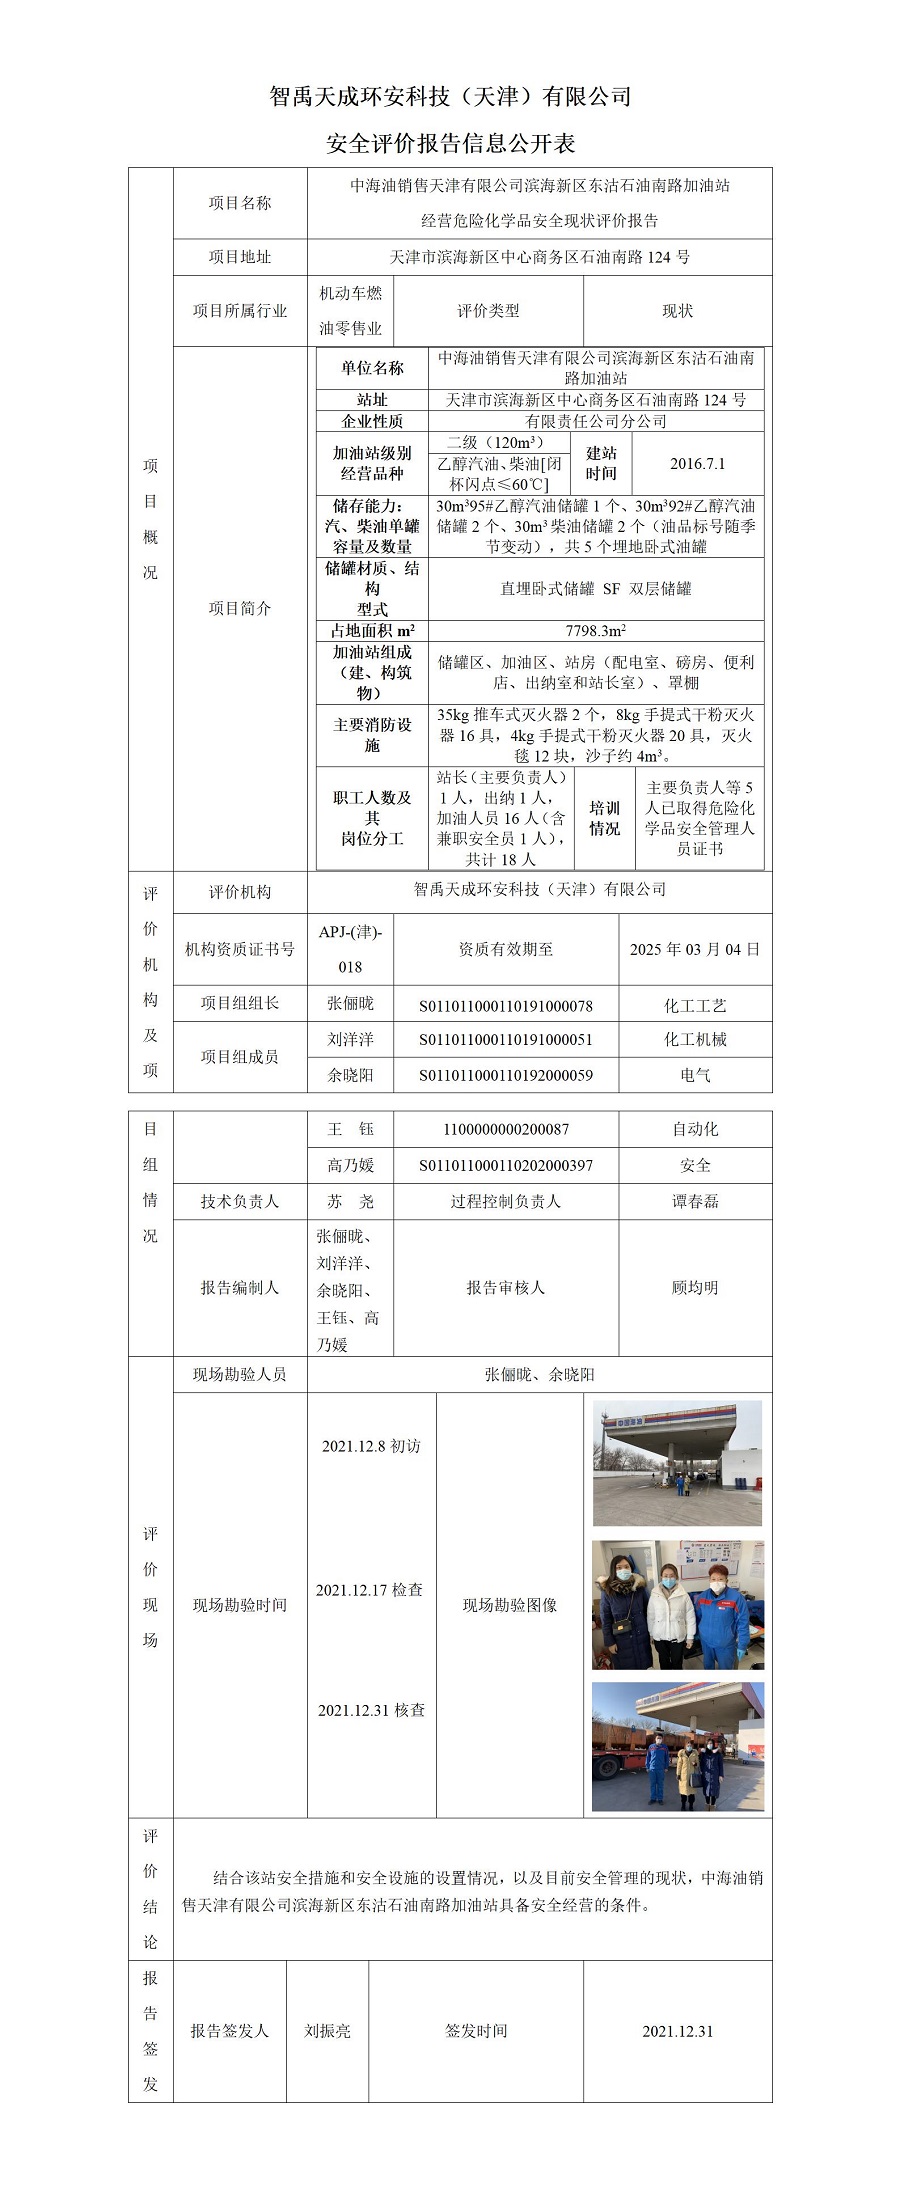 安全评价报告信息公开表-中海油销售天津有限公司滨海新区东沽石油南路加油站_01.jpg